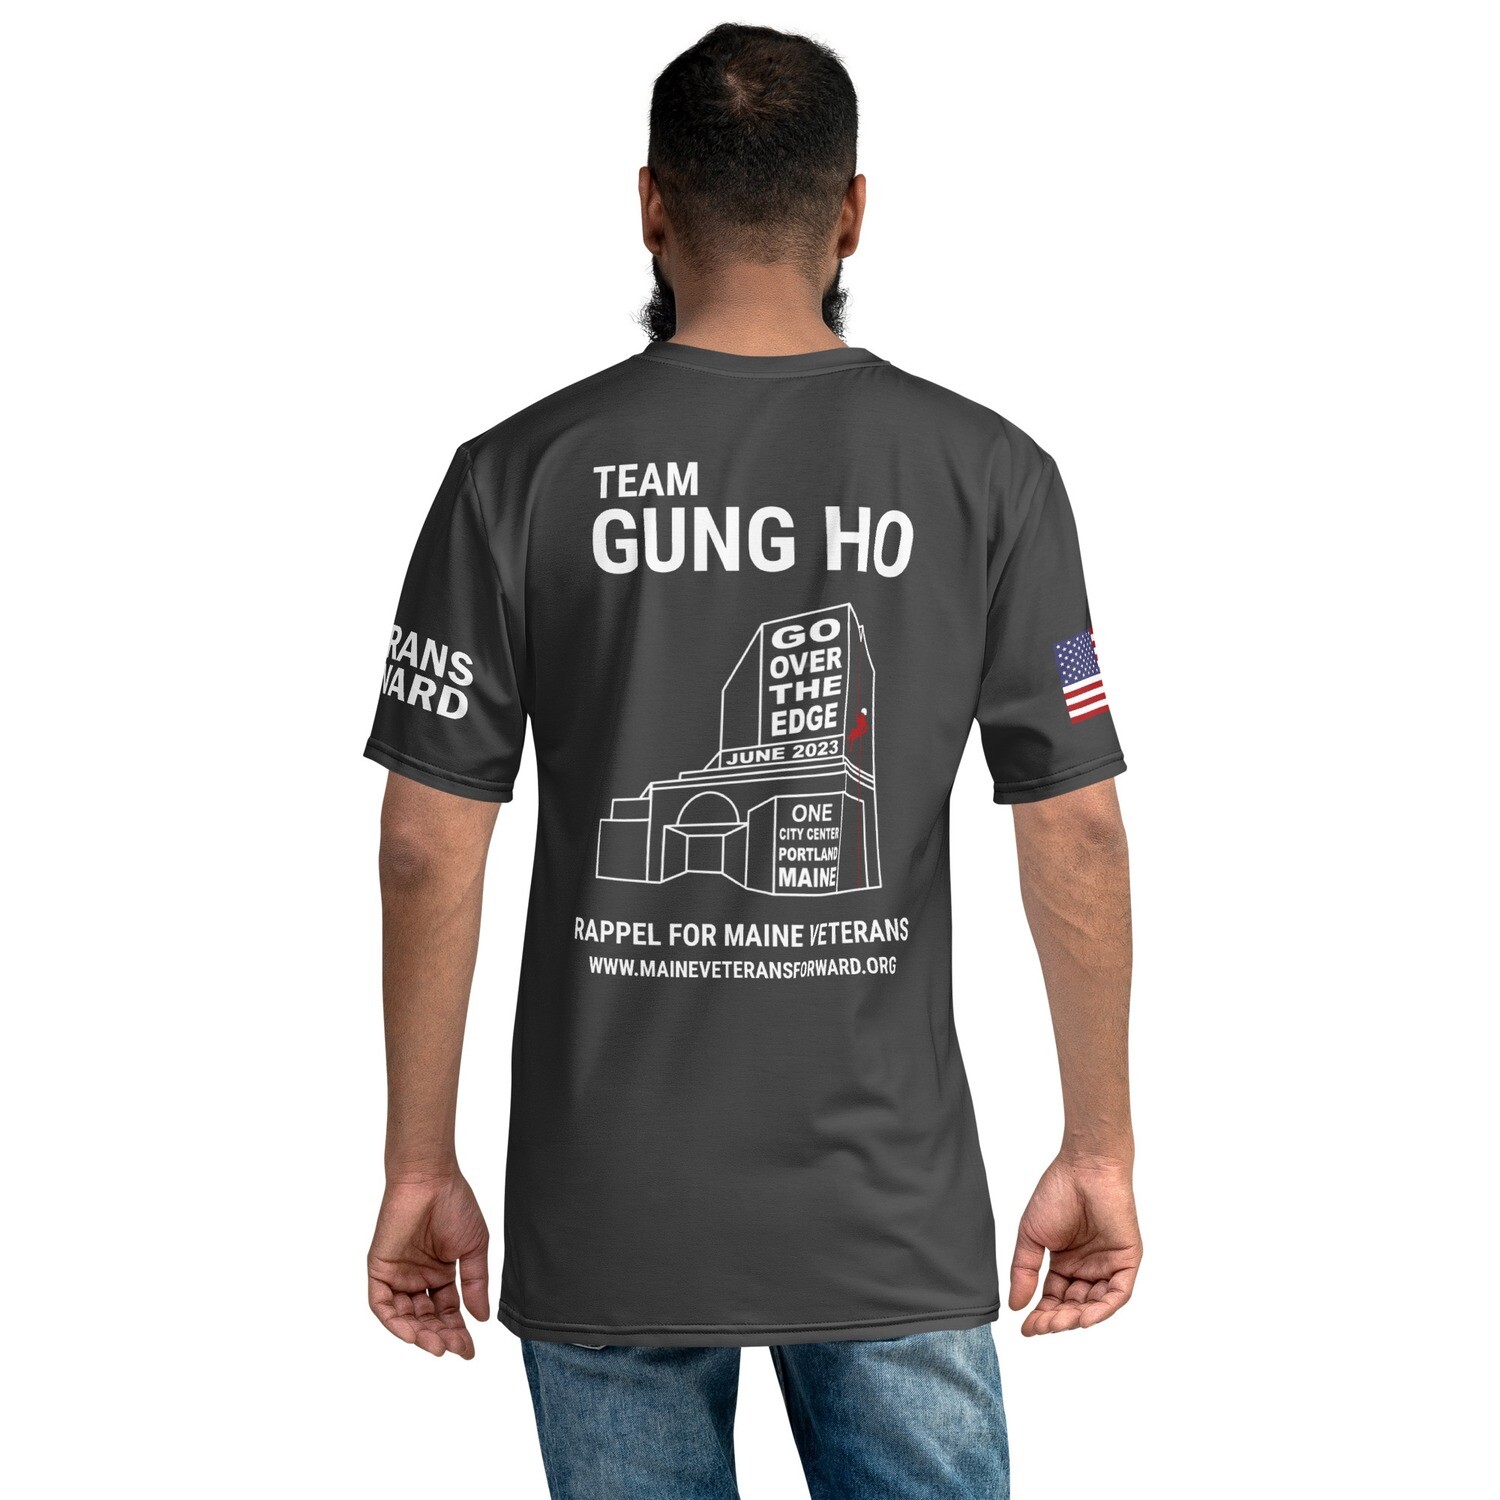 Omgivelser Arbejdsgiver Afstå Team Shirt: Gung Ho - Over The Edge (Regular Fit)